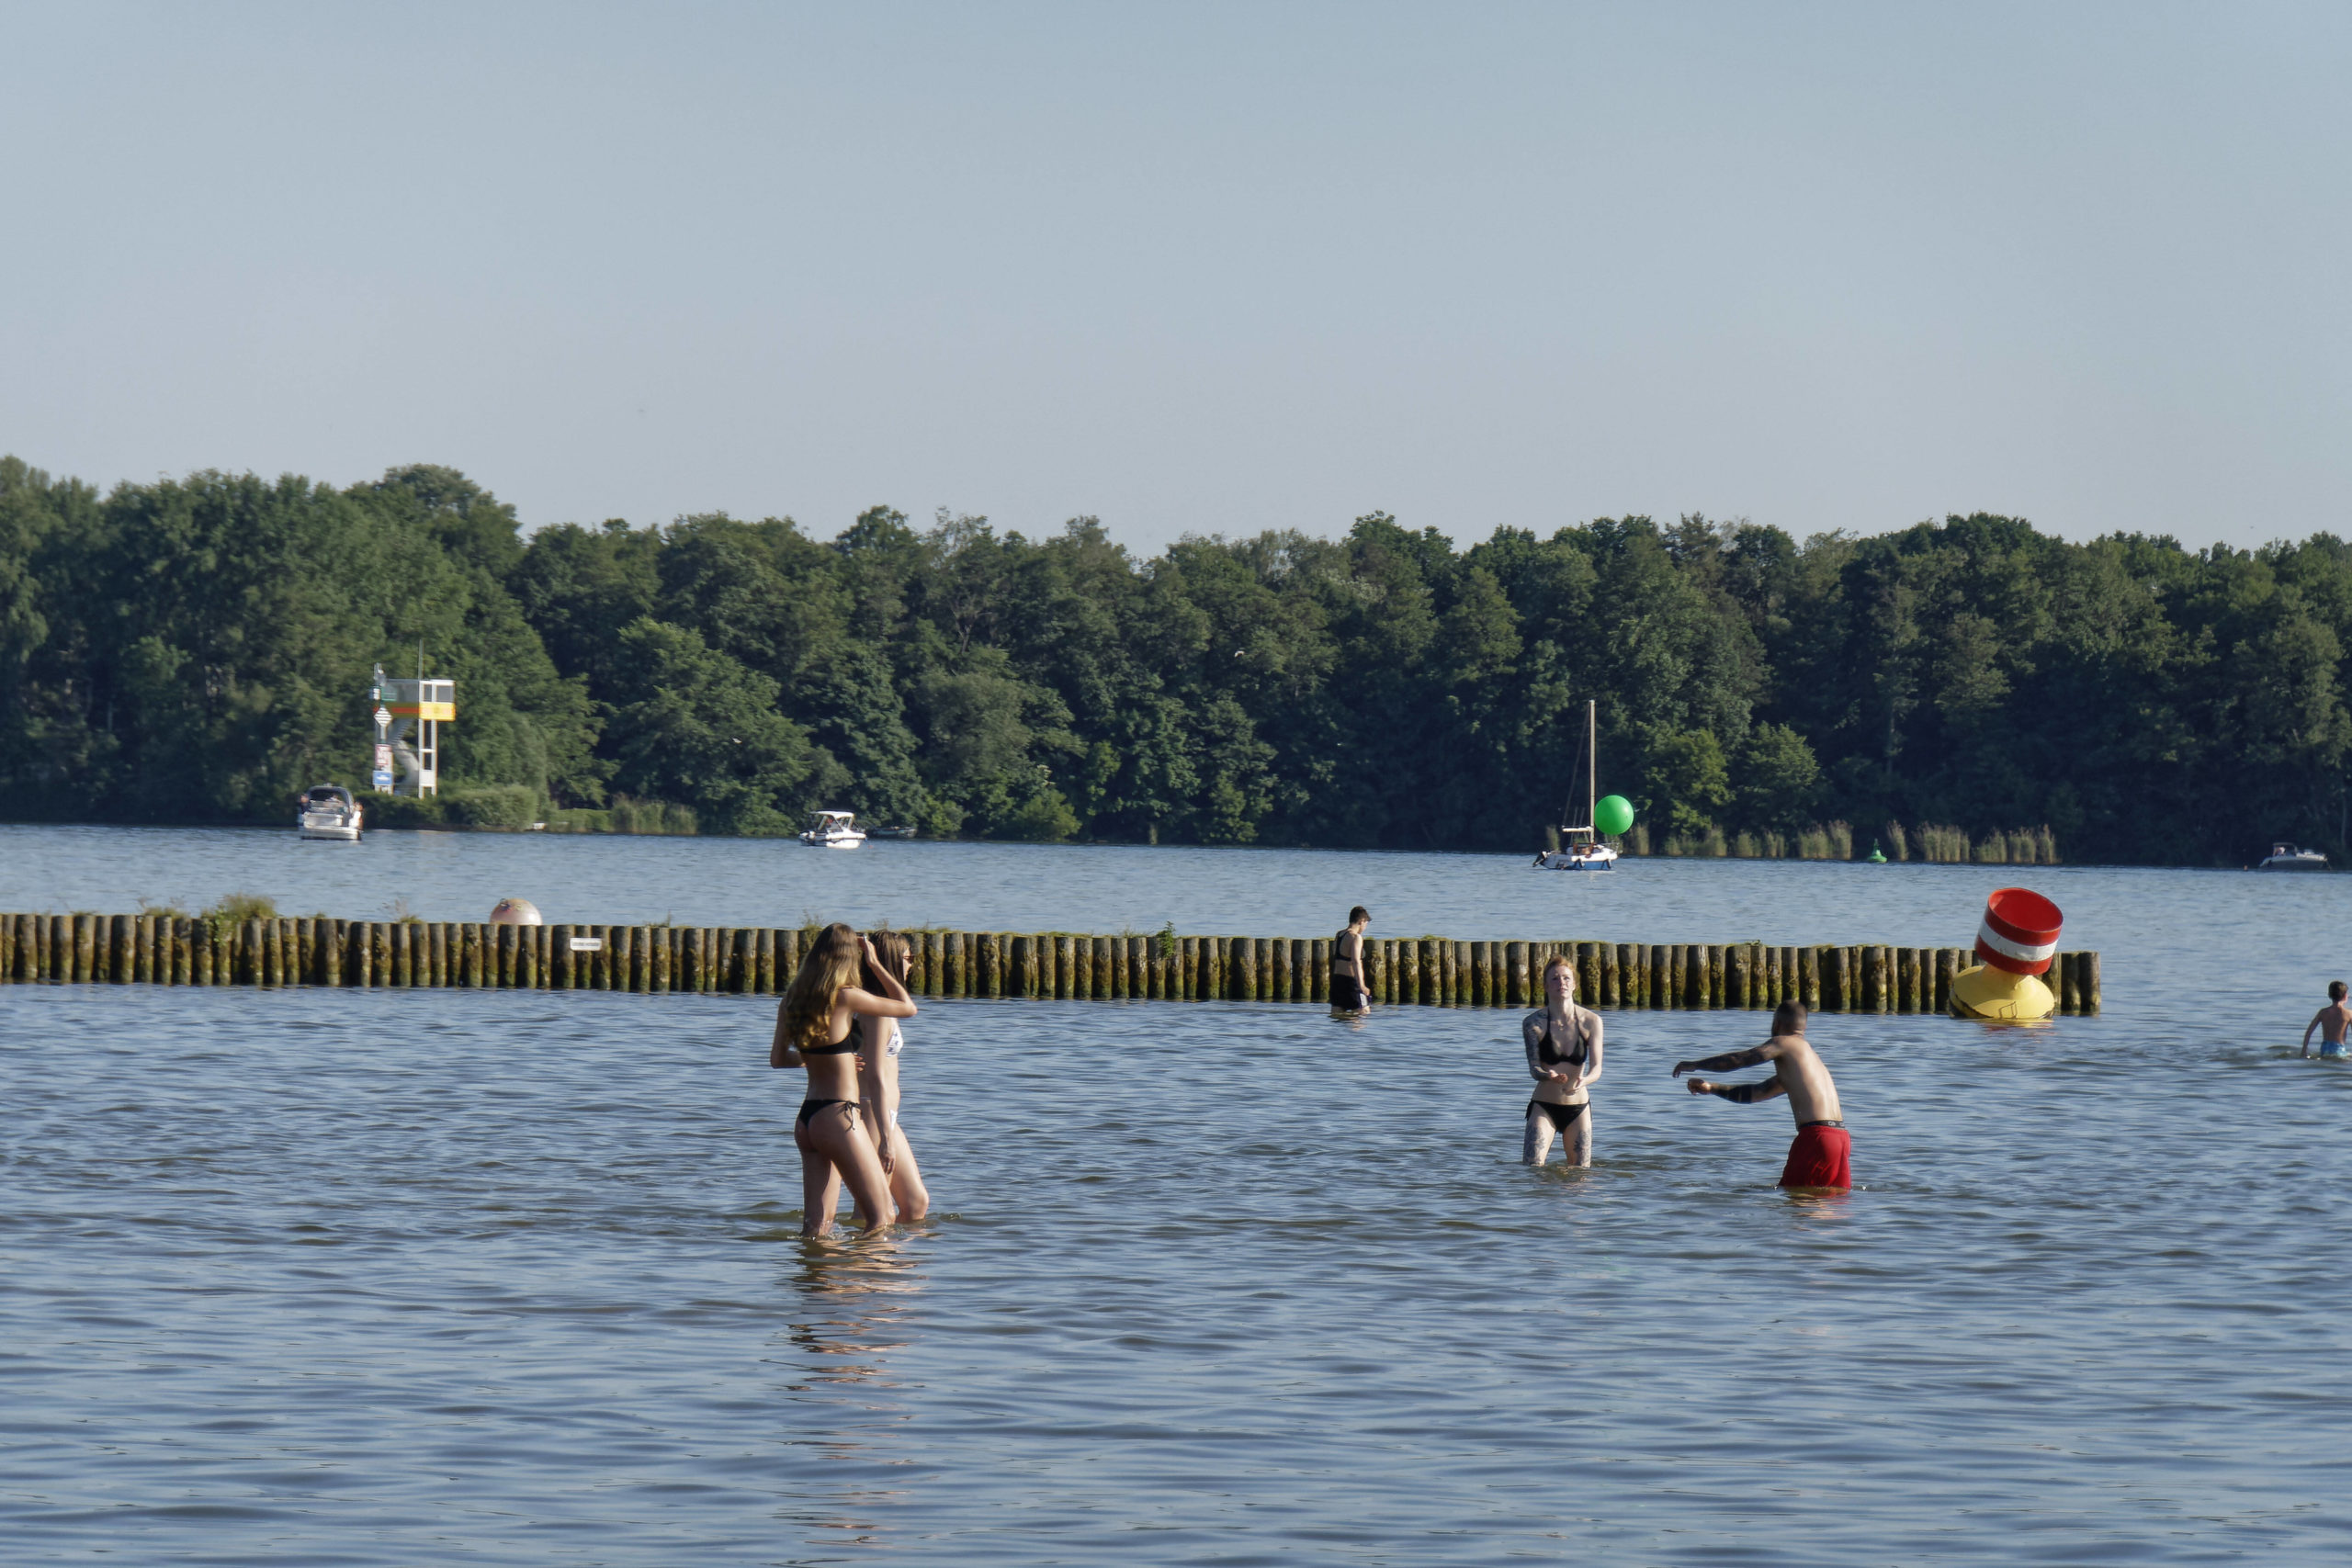 Am Müggelsee findet sich eines von Berlins Strandbädern. Vorne ist das Wasser ziemlich flach, also perfekt zum Ballspielen. Foto: Imago/Jürgen Held